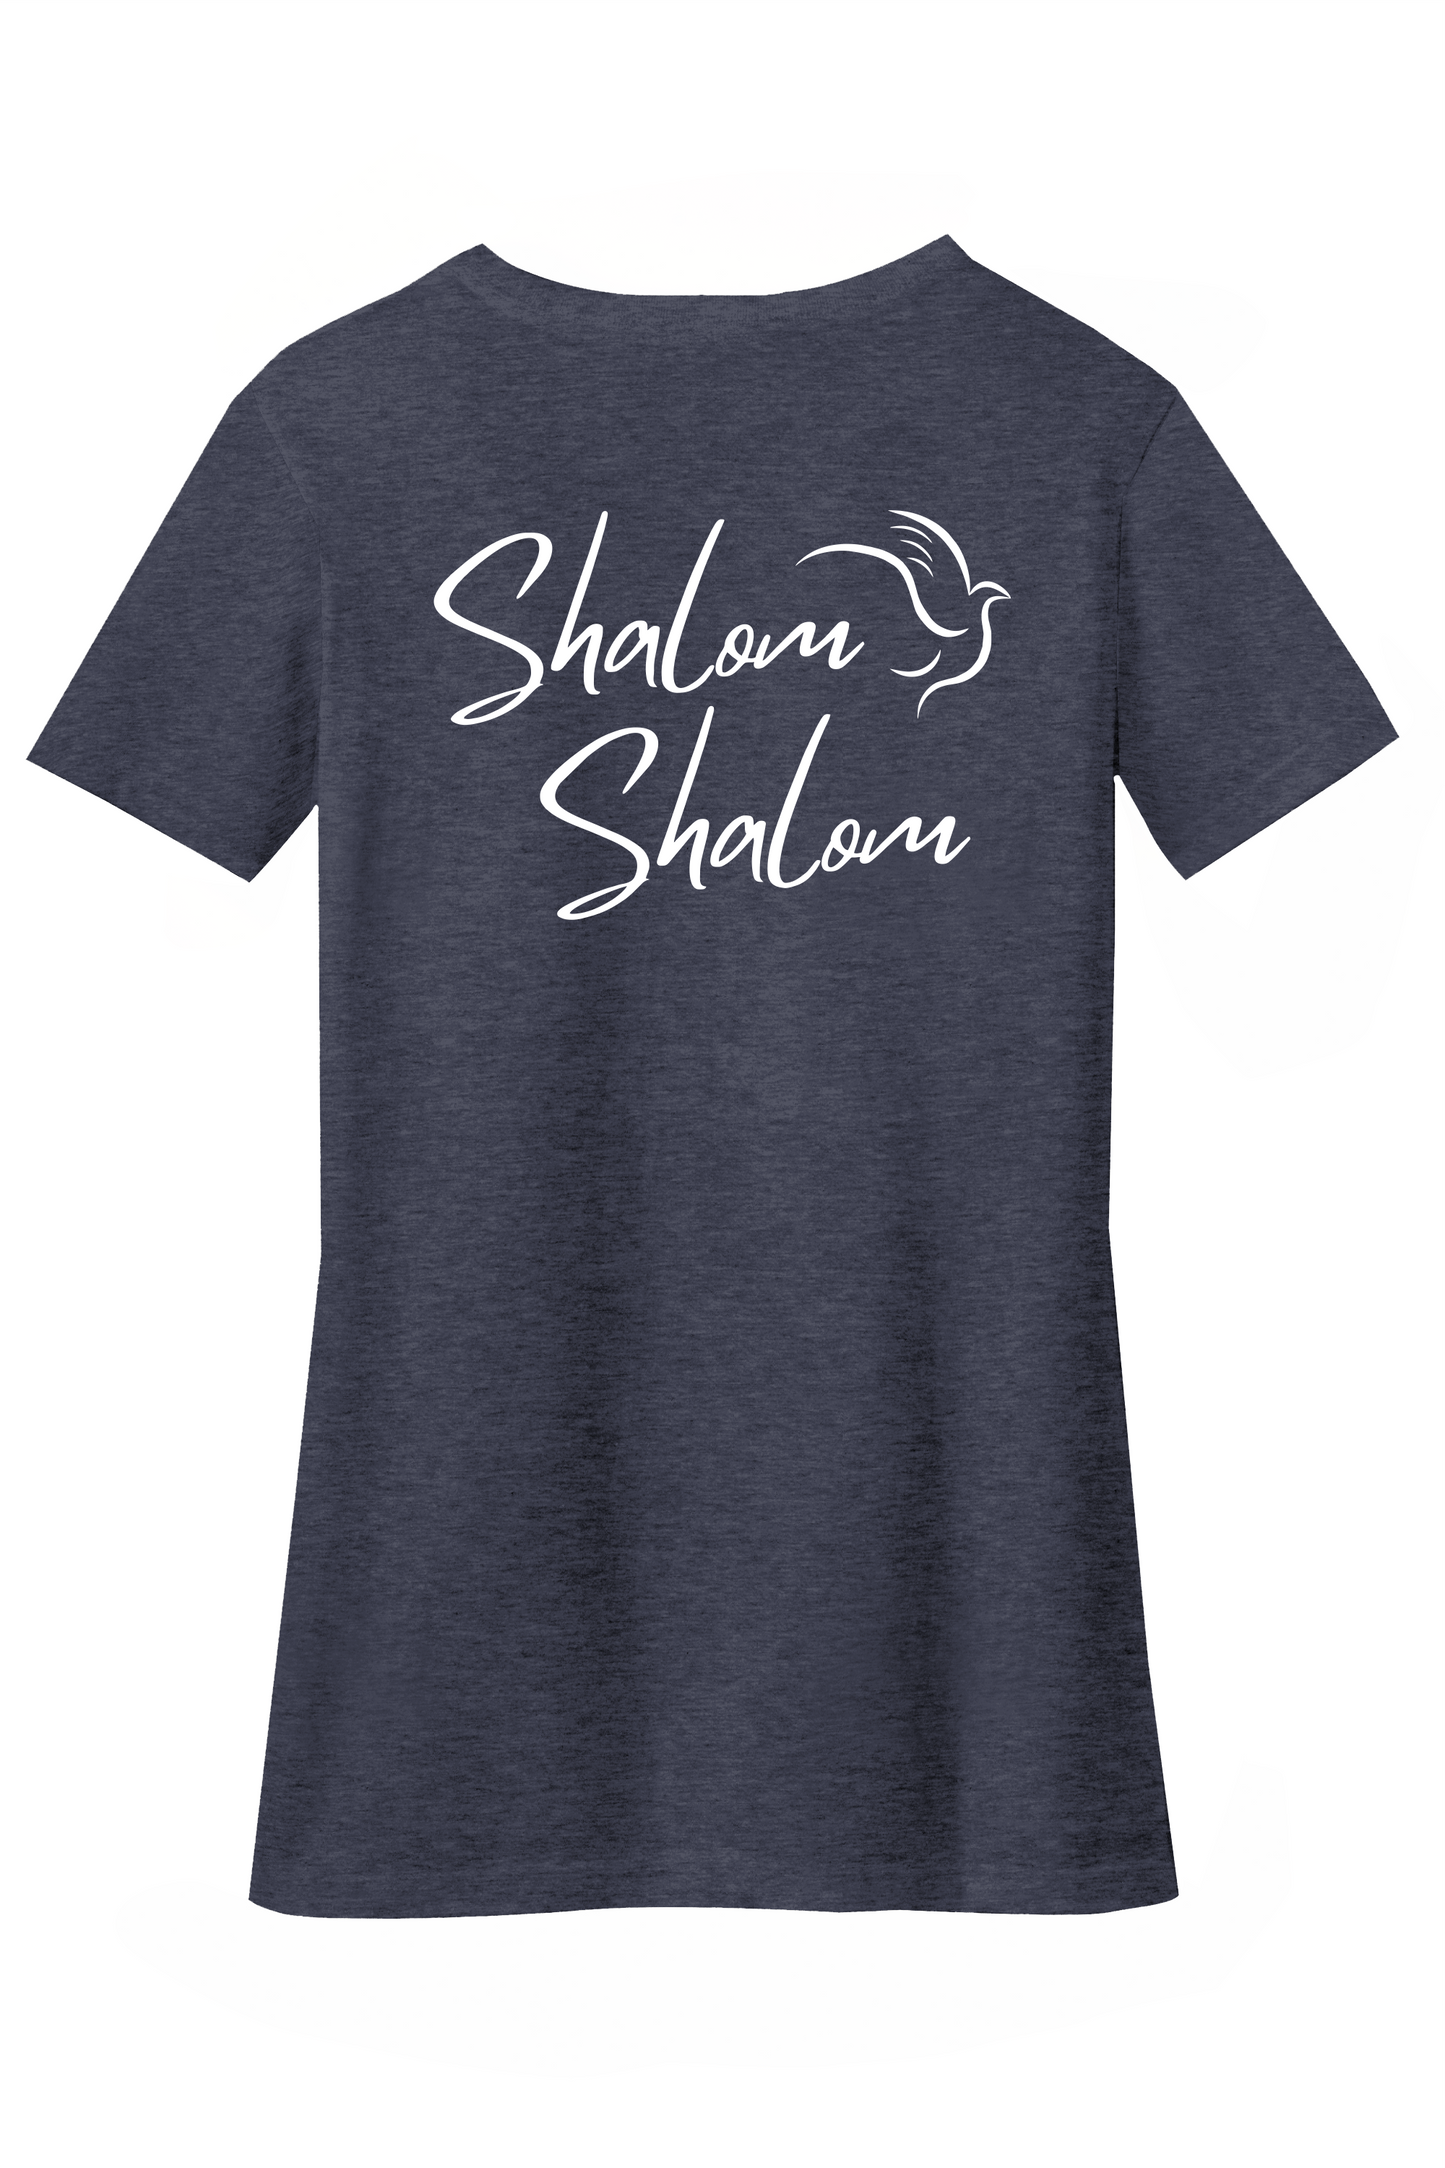 Ladies Shalom - Israel T-shirt